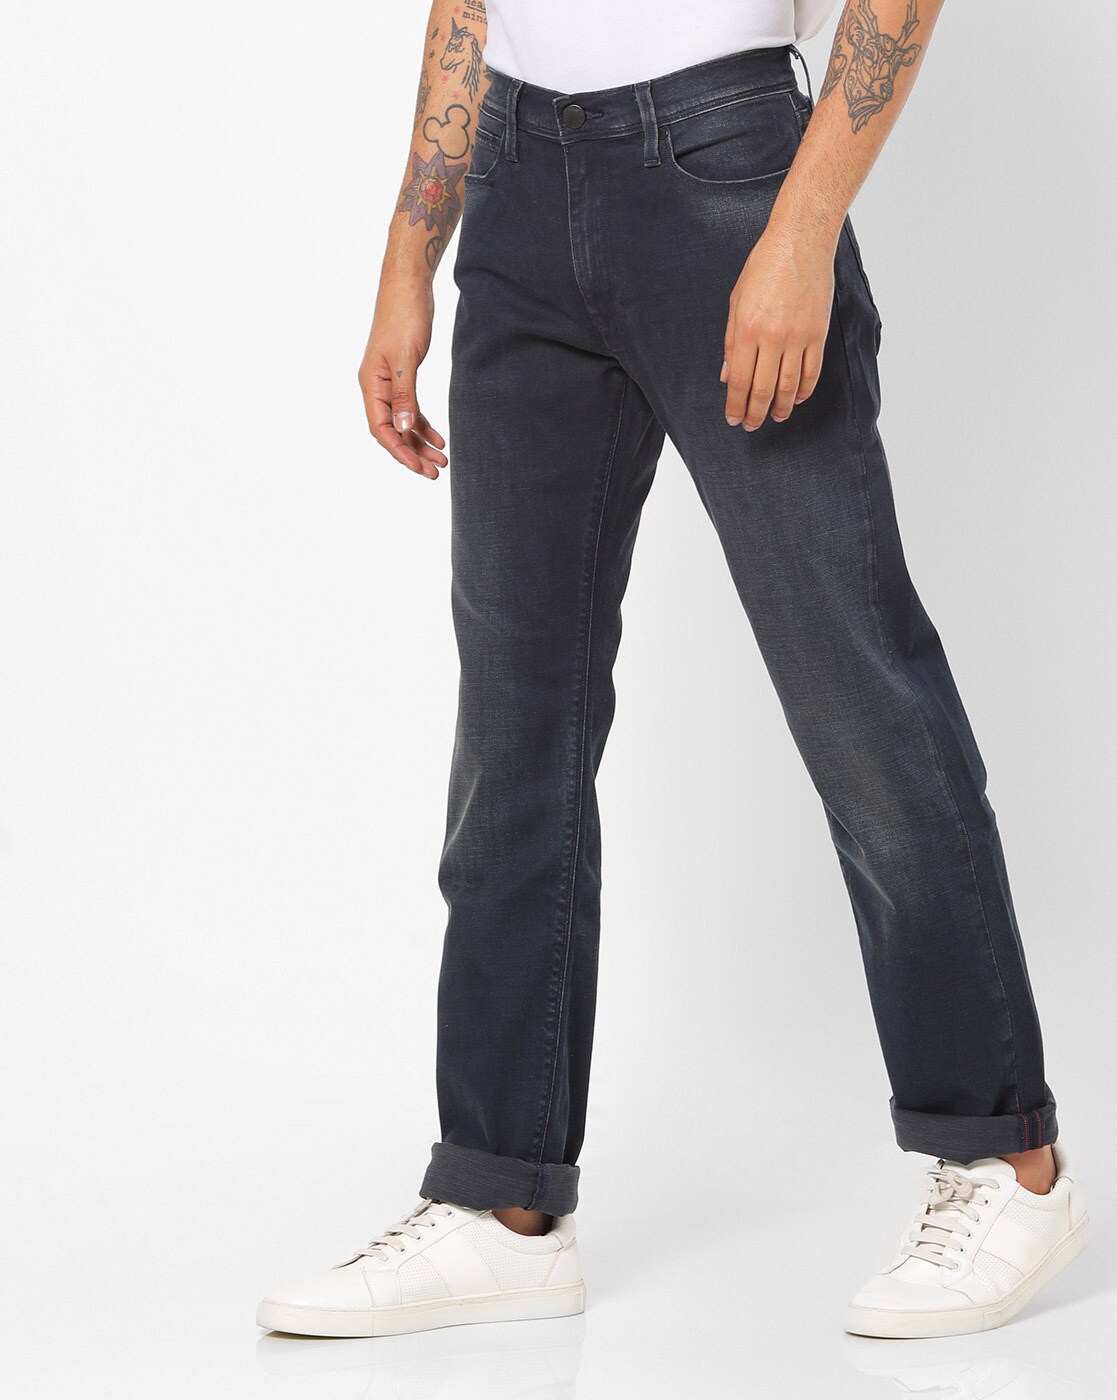 levis 513 jeans online